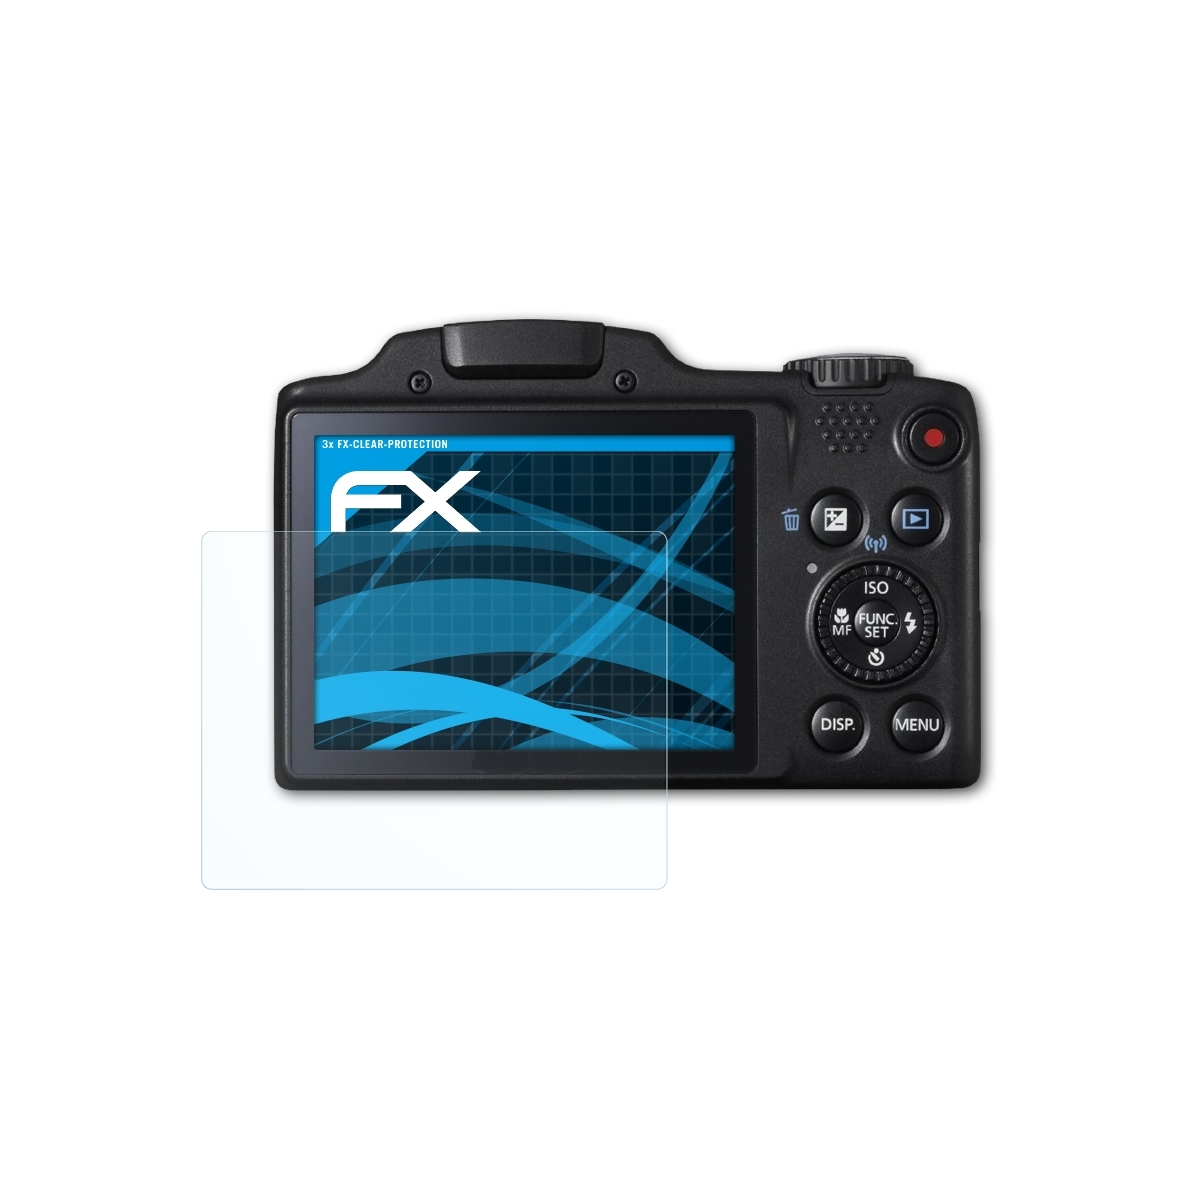 ATFOLIX Displayschutz(für FX-Clear HS) Canon 3x SX510 PowerShot